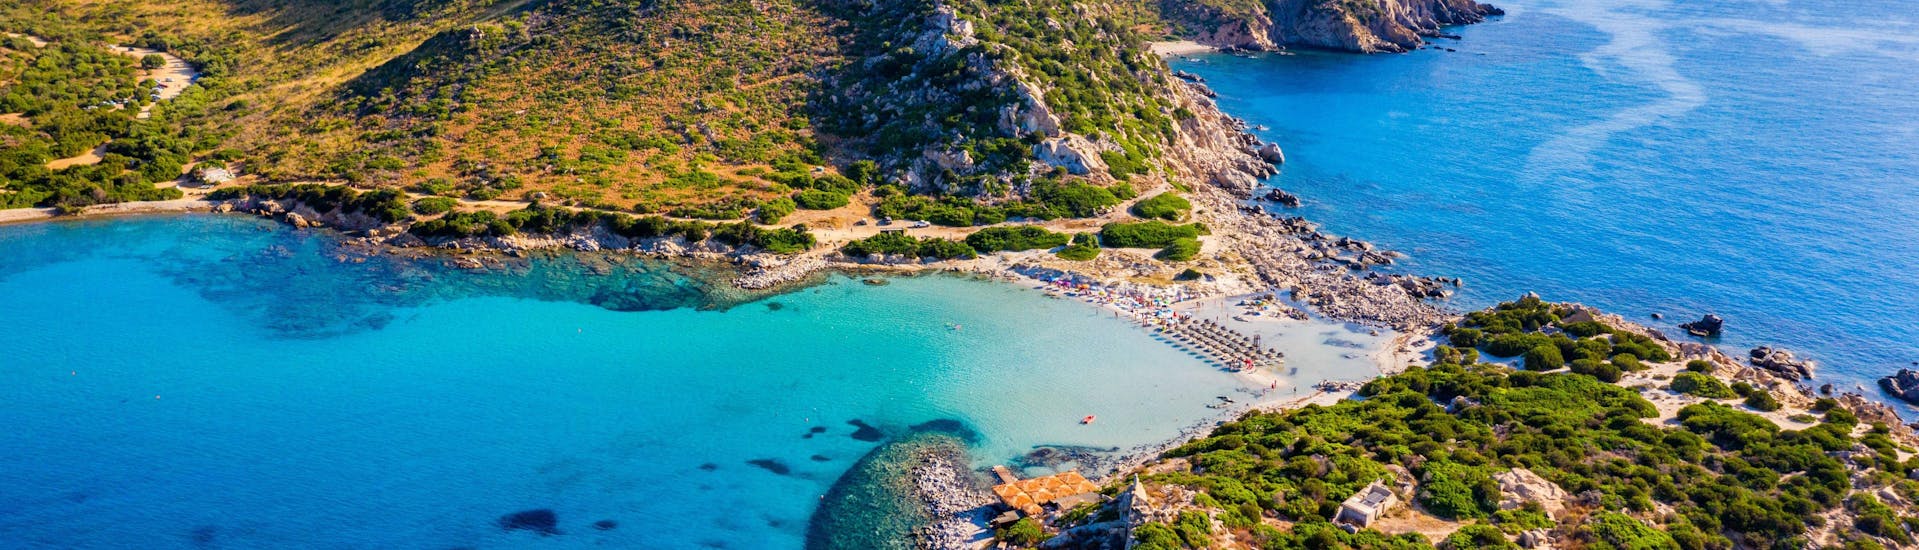 Blick auf Punta Molentis, Sardinien, ein beliebtes Ziel für Bootsfahrten.